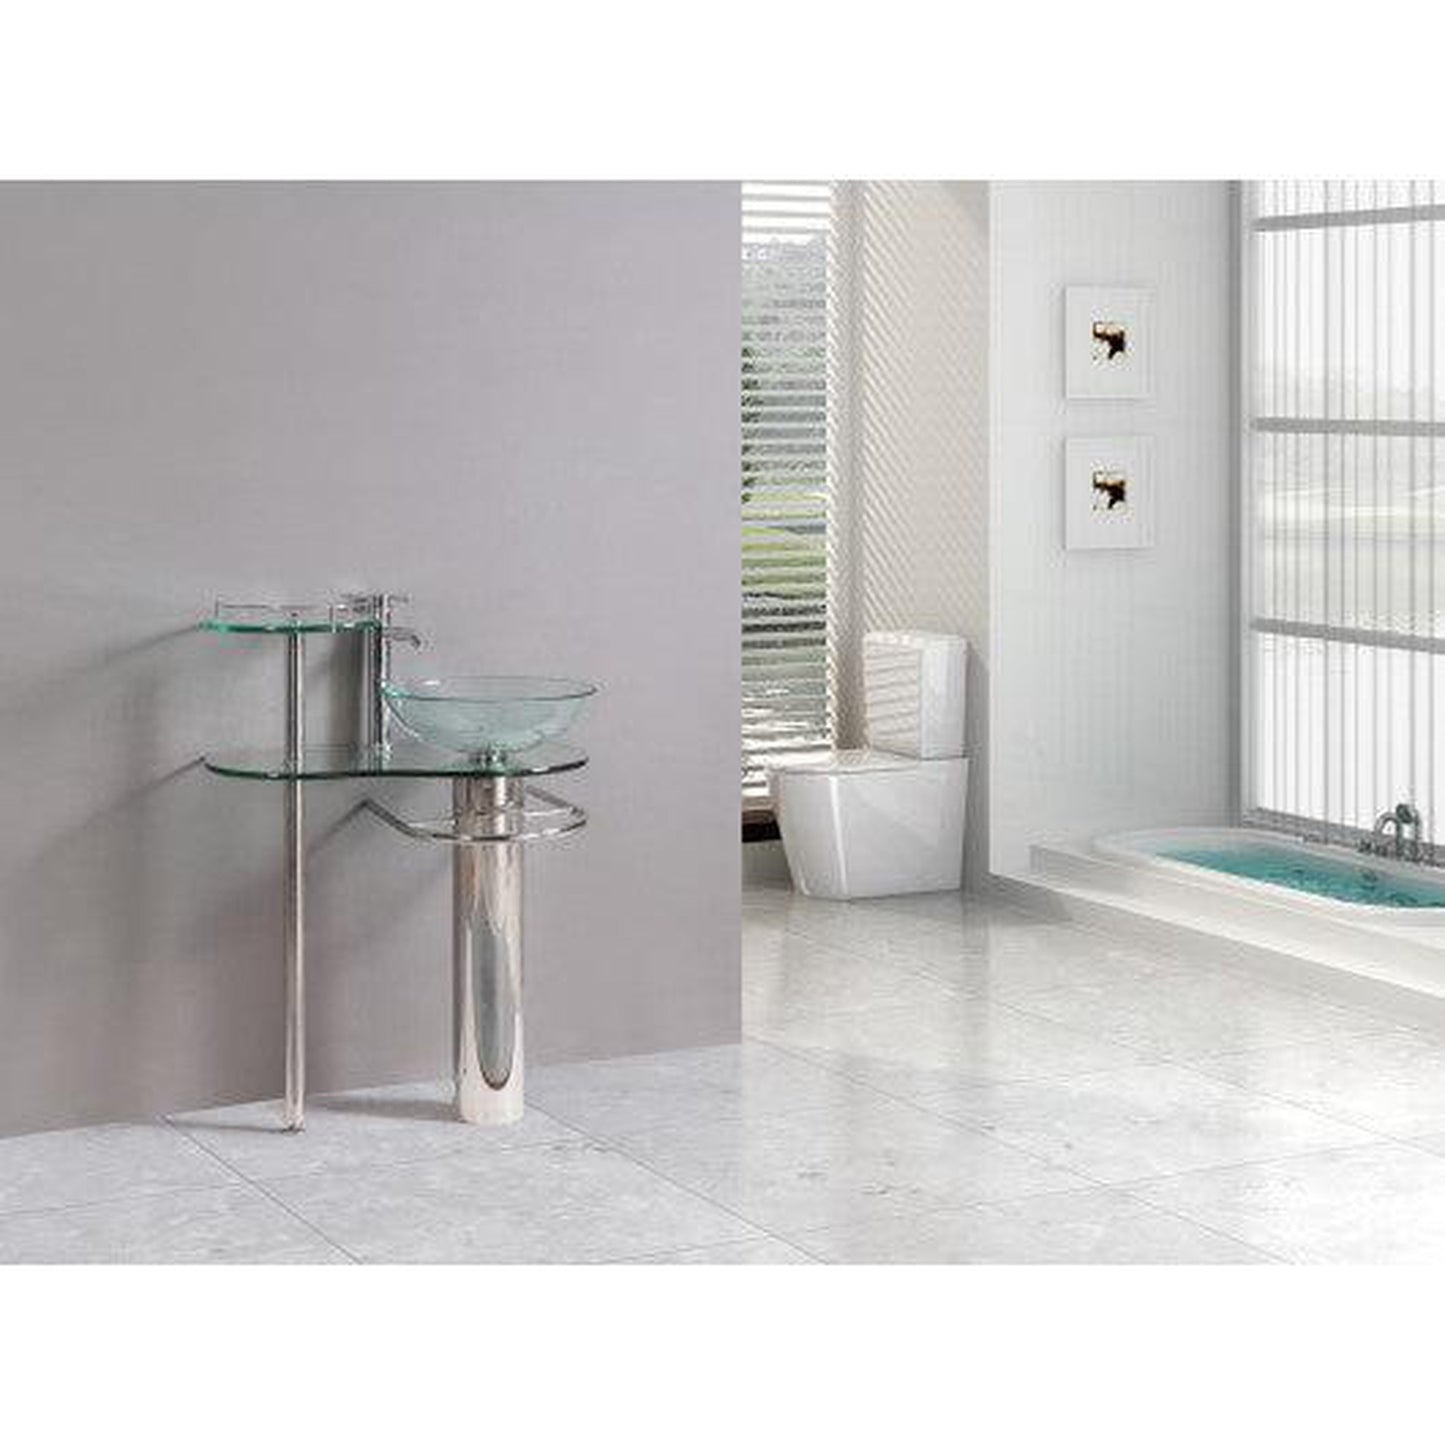 Costway 29" Bathroom Vanities Pedestal Vessel Sink Bowl Glass Modern Furniture Set